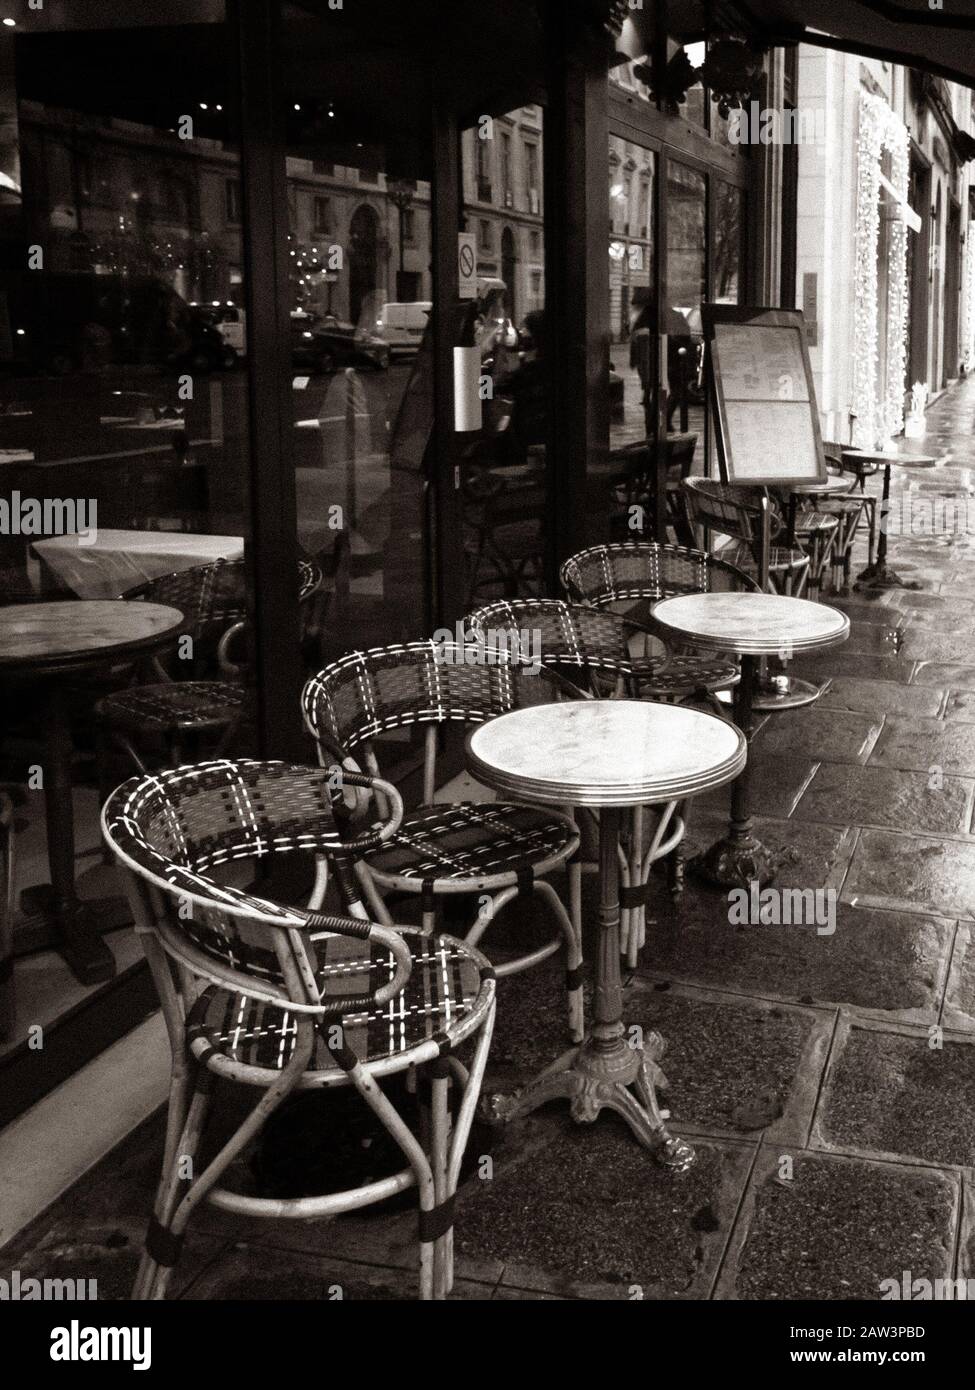 Paris, France, café parisien, tables et chaises sur trottoir pavé, photo en noir et blanc. Banque D'Images